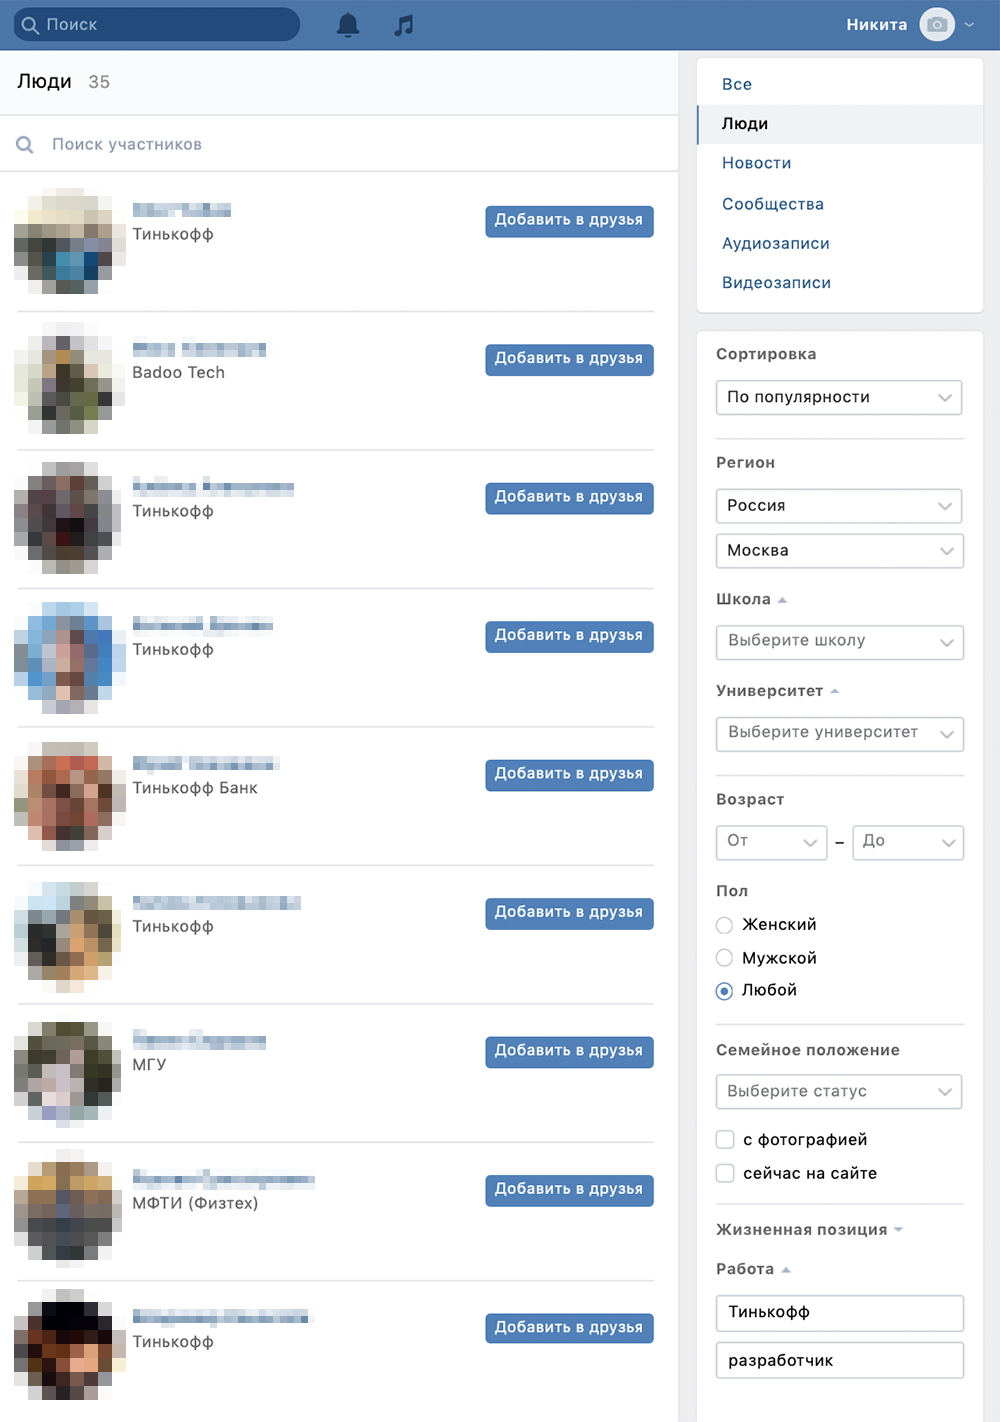 С помощью фильтров в соцсетях можно найти сотрудников из конкретной компании. Вот разработчики, которые живут в Москве и работают или раньше работали в Тинькофф-банке